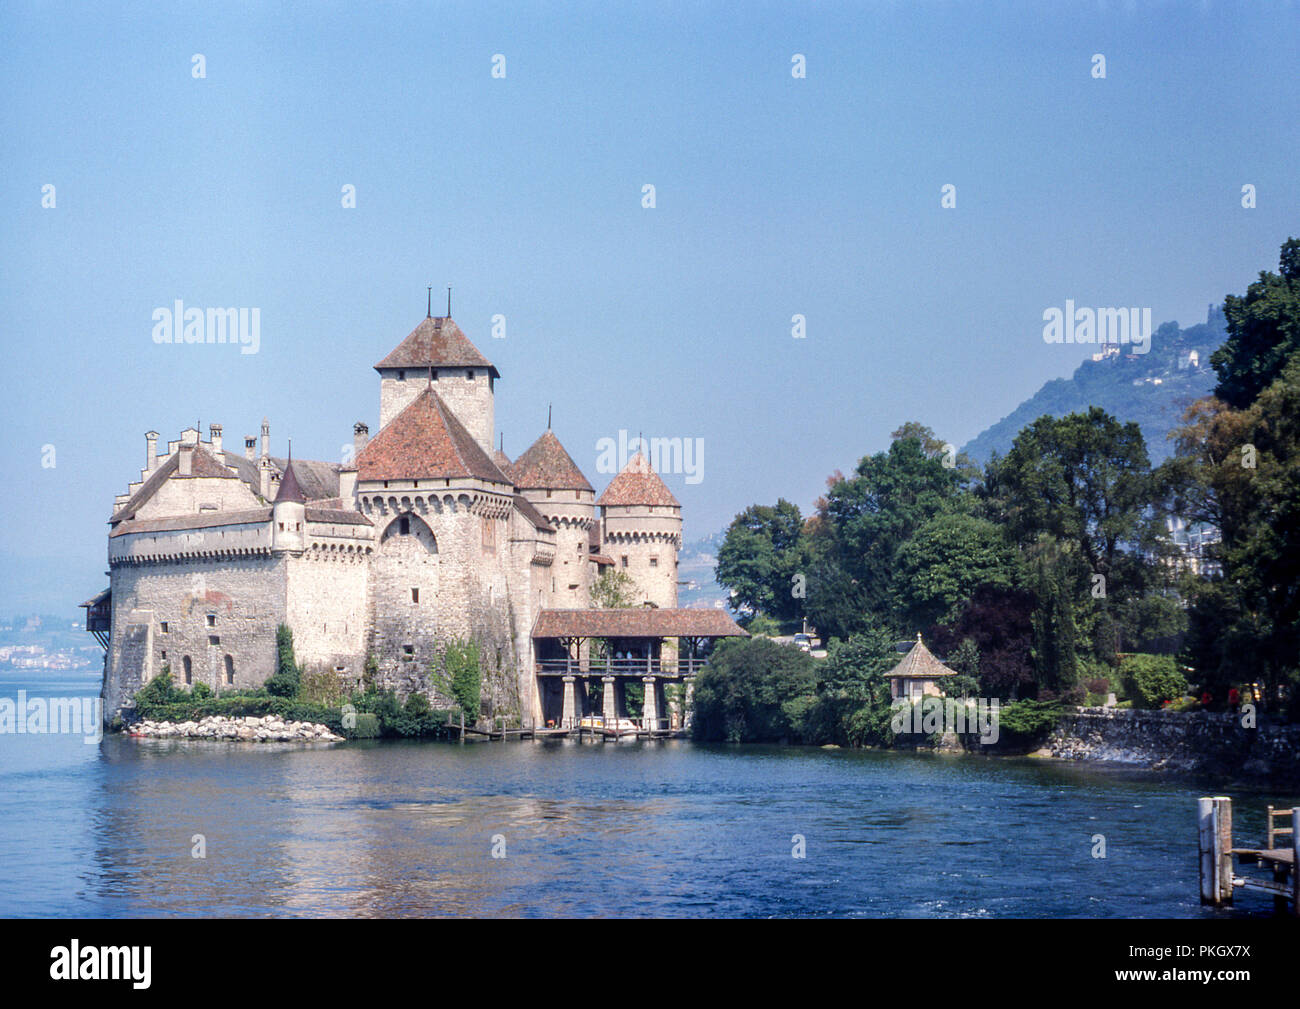 Castillo de Chillon, Castillo de Chillon a orillas del lago de Ginebra, Suiza. Foto original tomada en agosto de 1975 en diapositivas de 35mm. Foto de stock